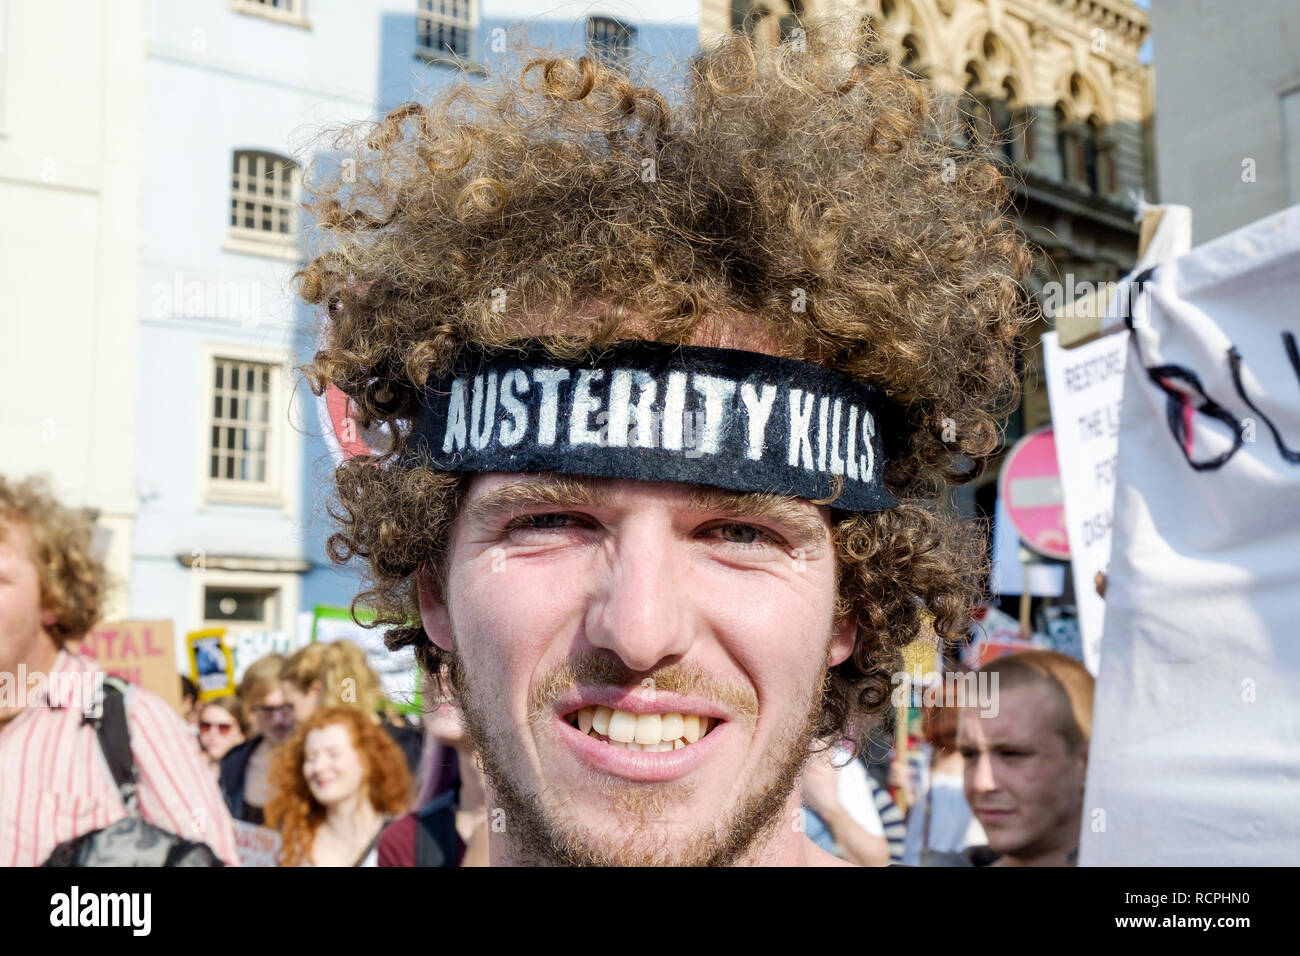 Les manifestants anti-austérité portant des pancartes et panneaux sont illustrés en prenant part à une manifestation anti-austérité et de démonstration à Bristol. Banque D'Images